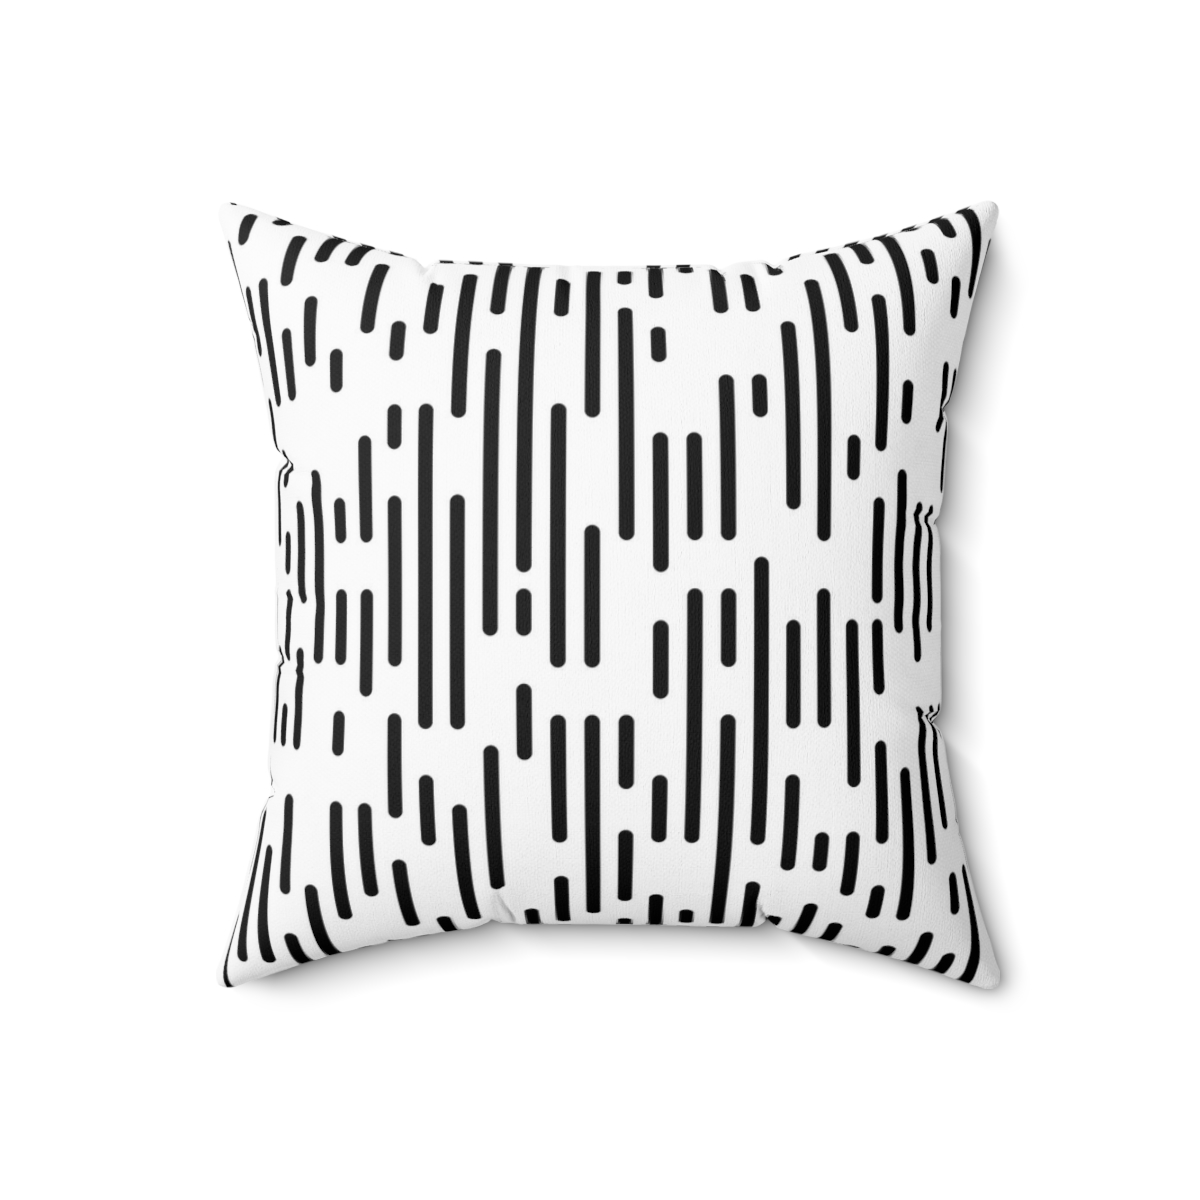 Square Pillows Black Stripes product thumbnail image